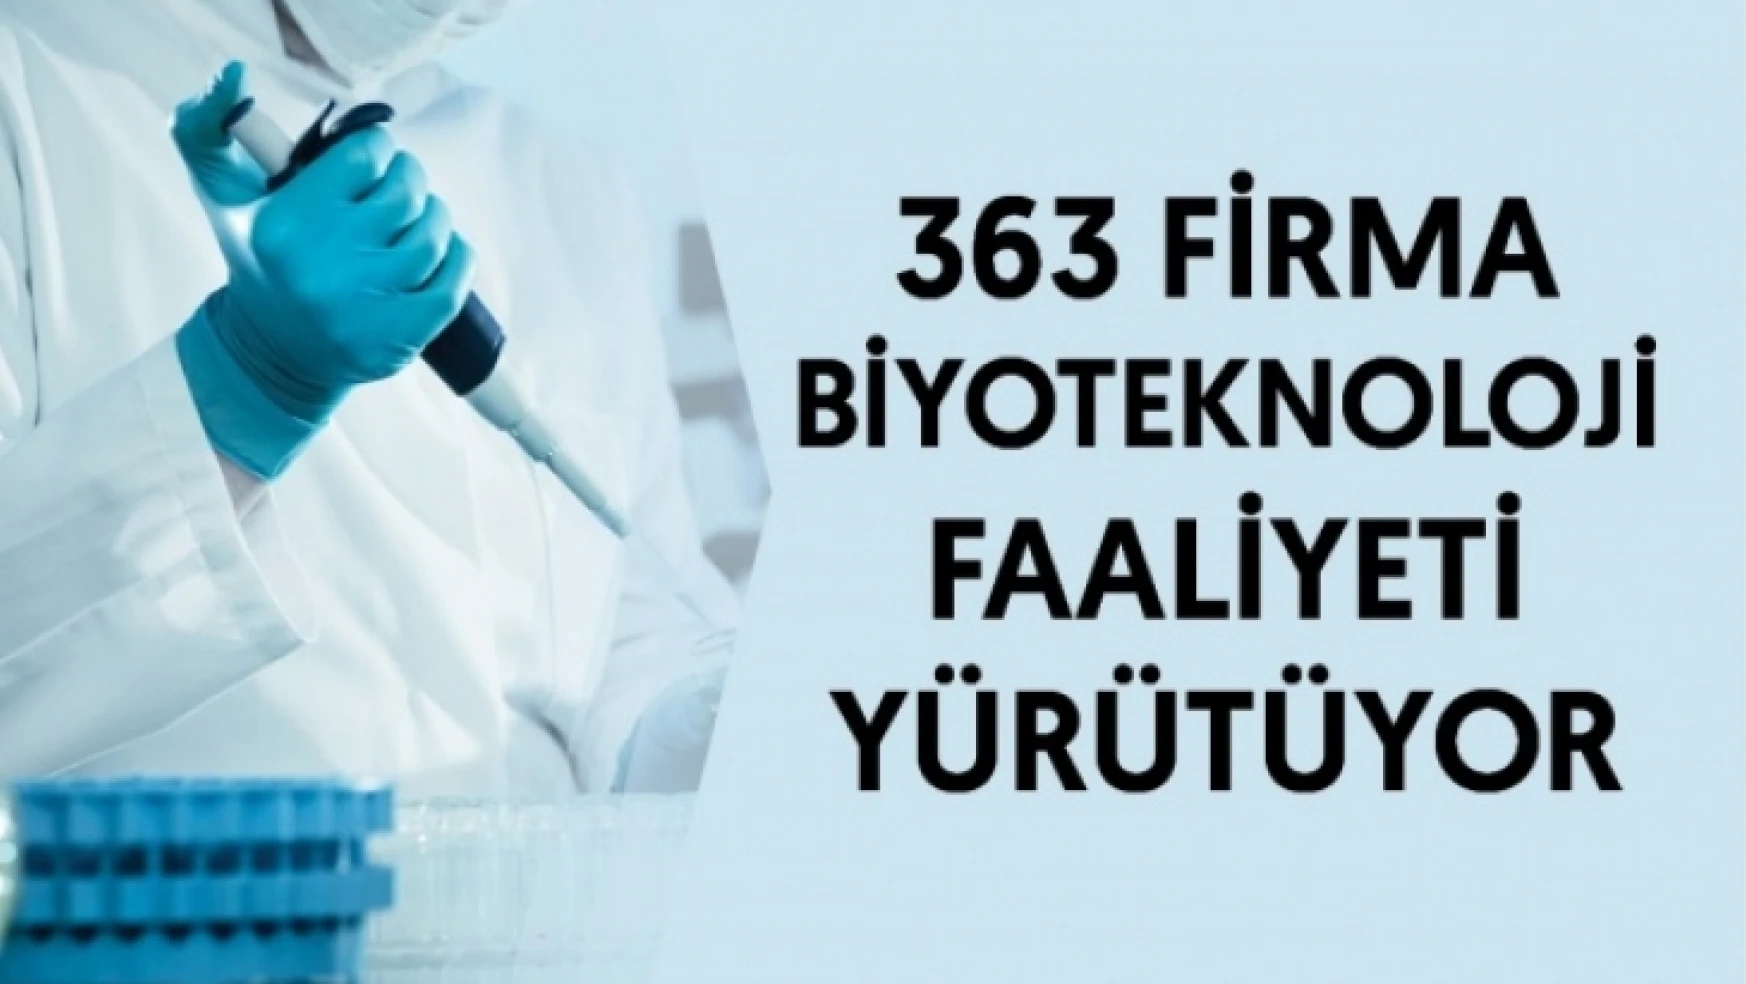 Biyoteknoloji faaliyeti yürüten girişim sayısı 363 oldu